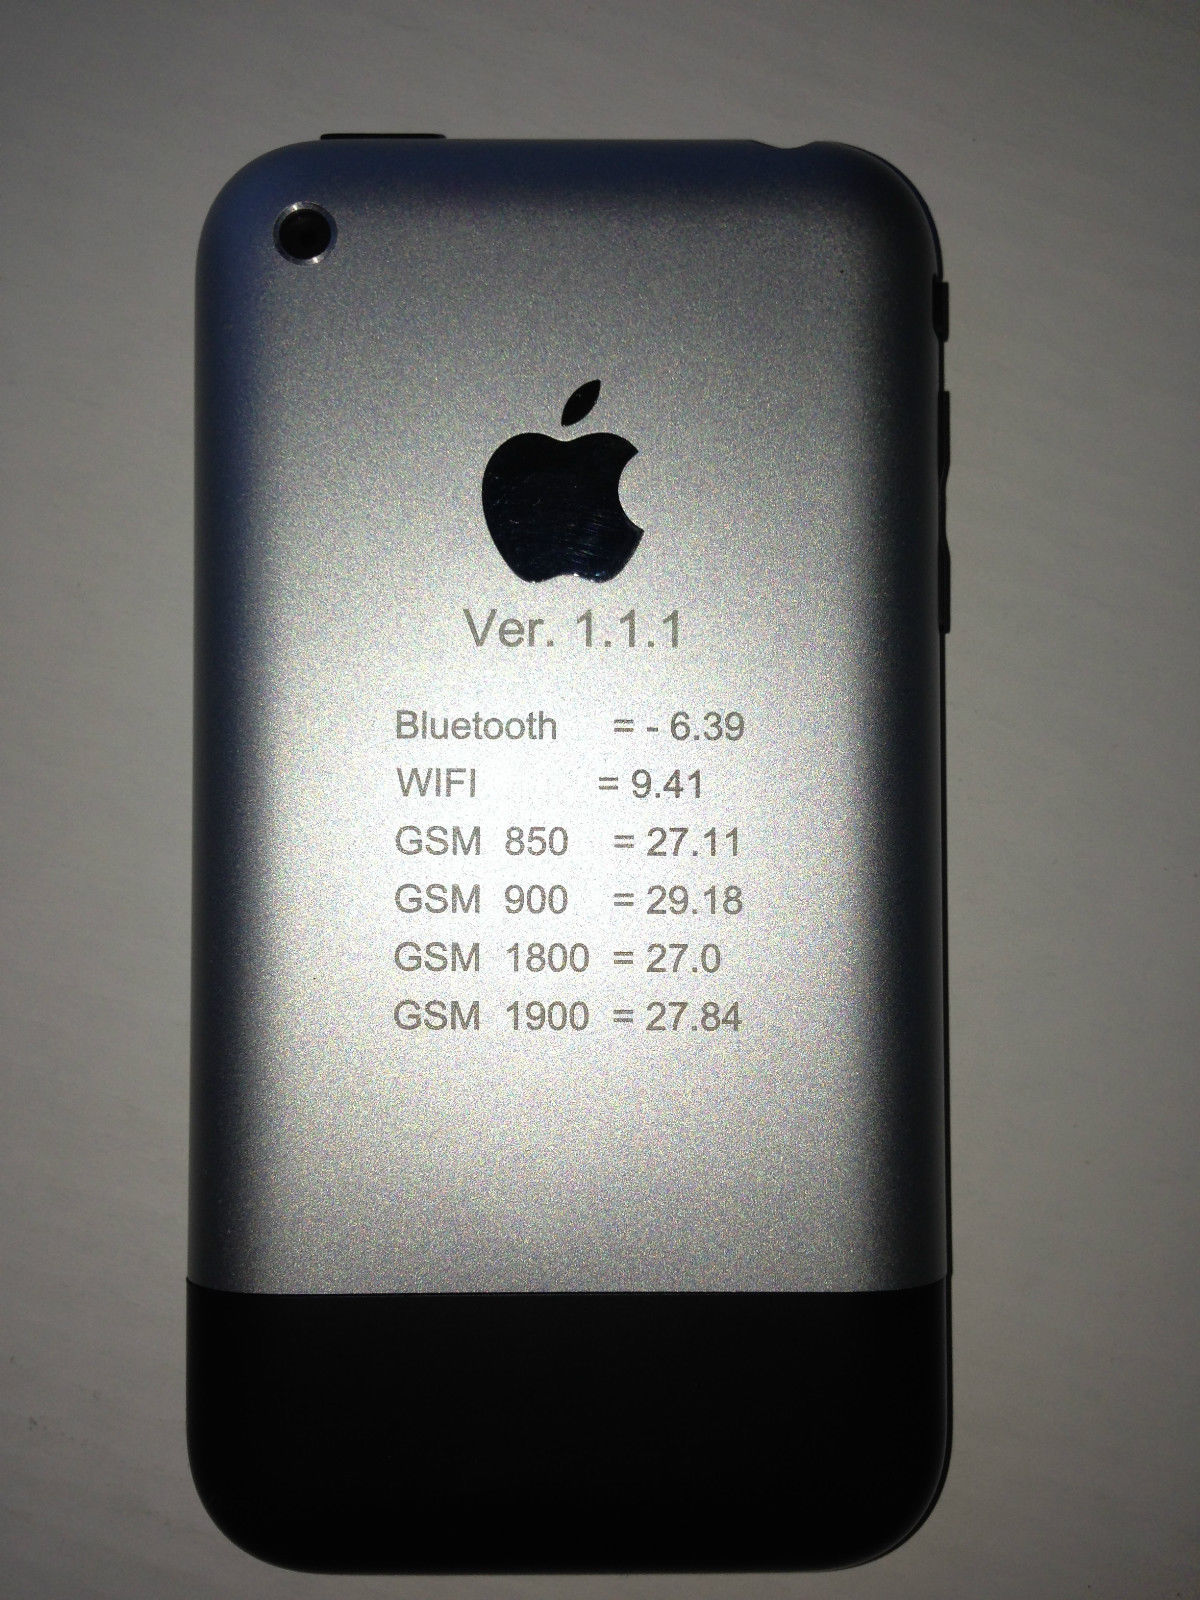 iPhone 1st gen prototype 2